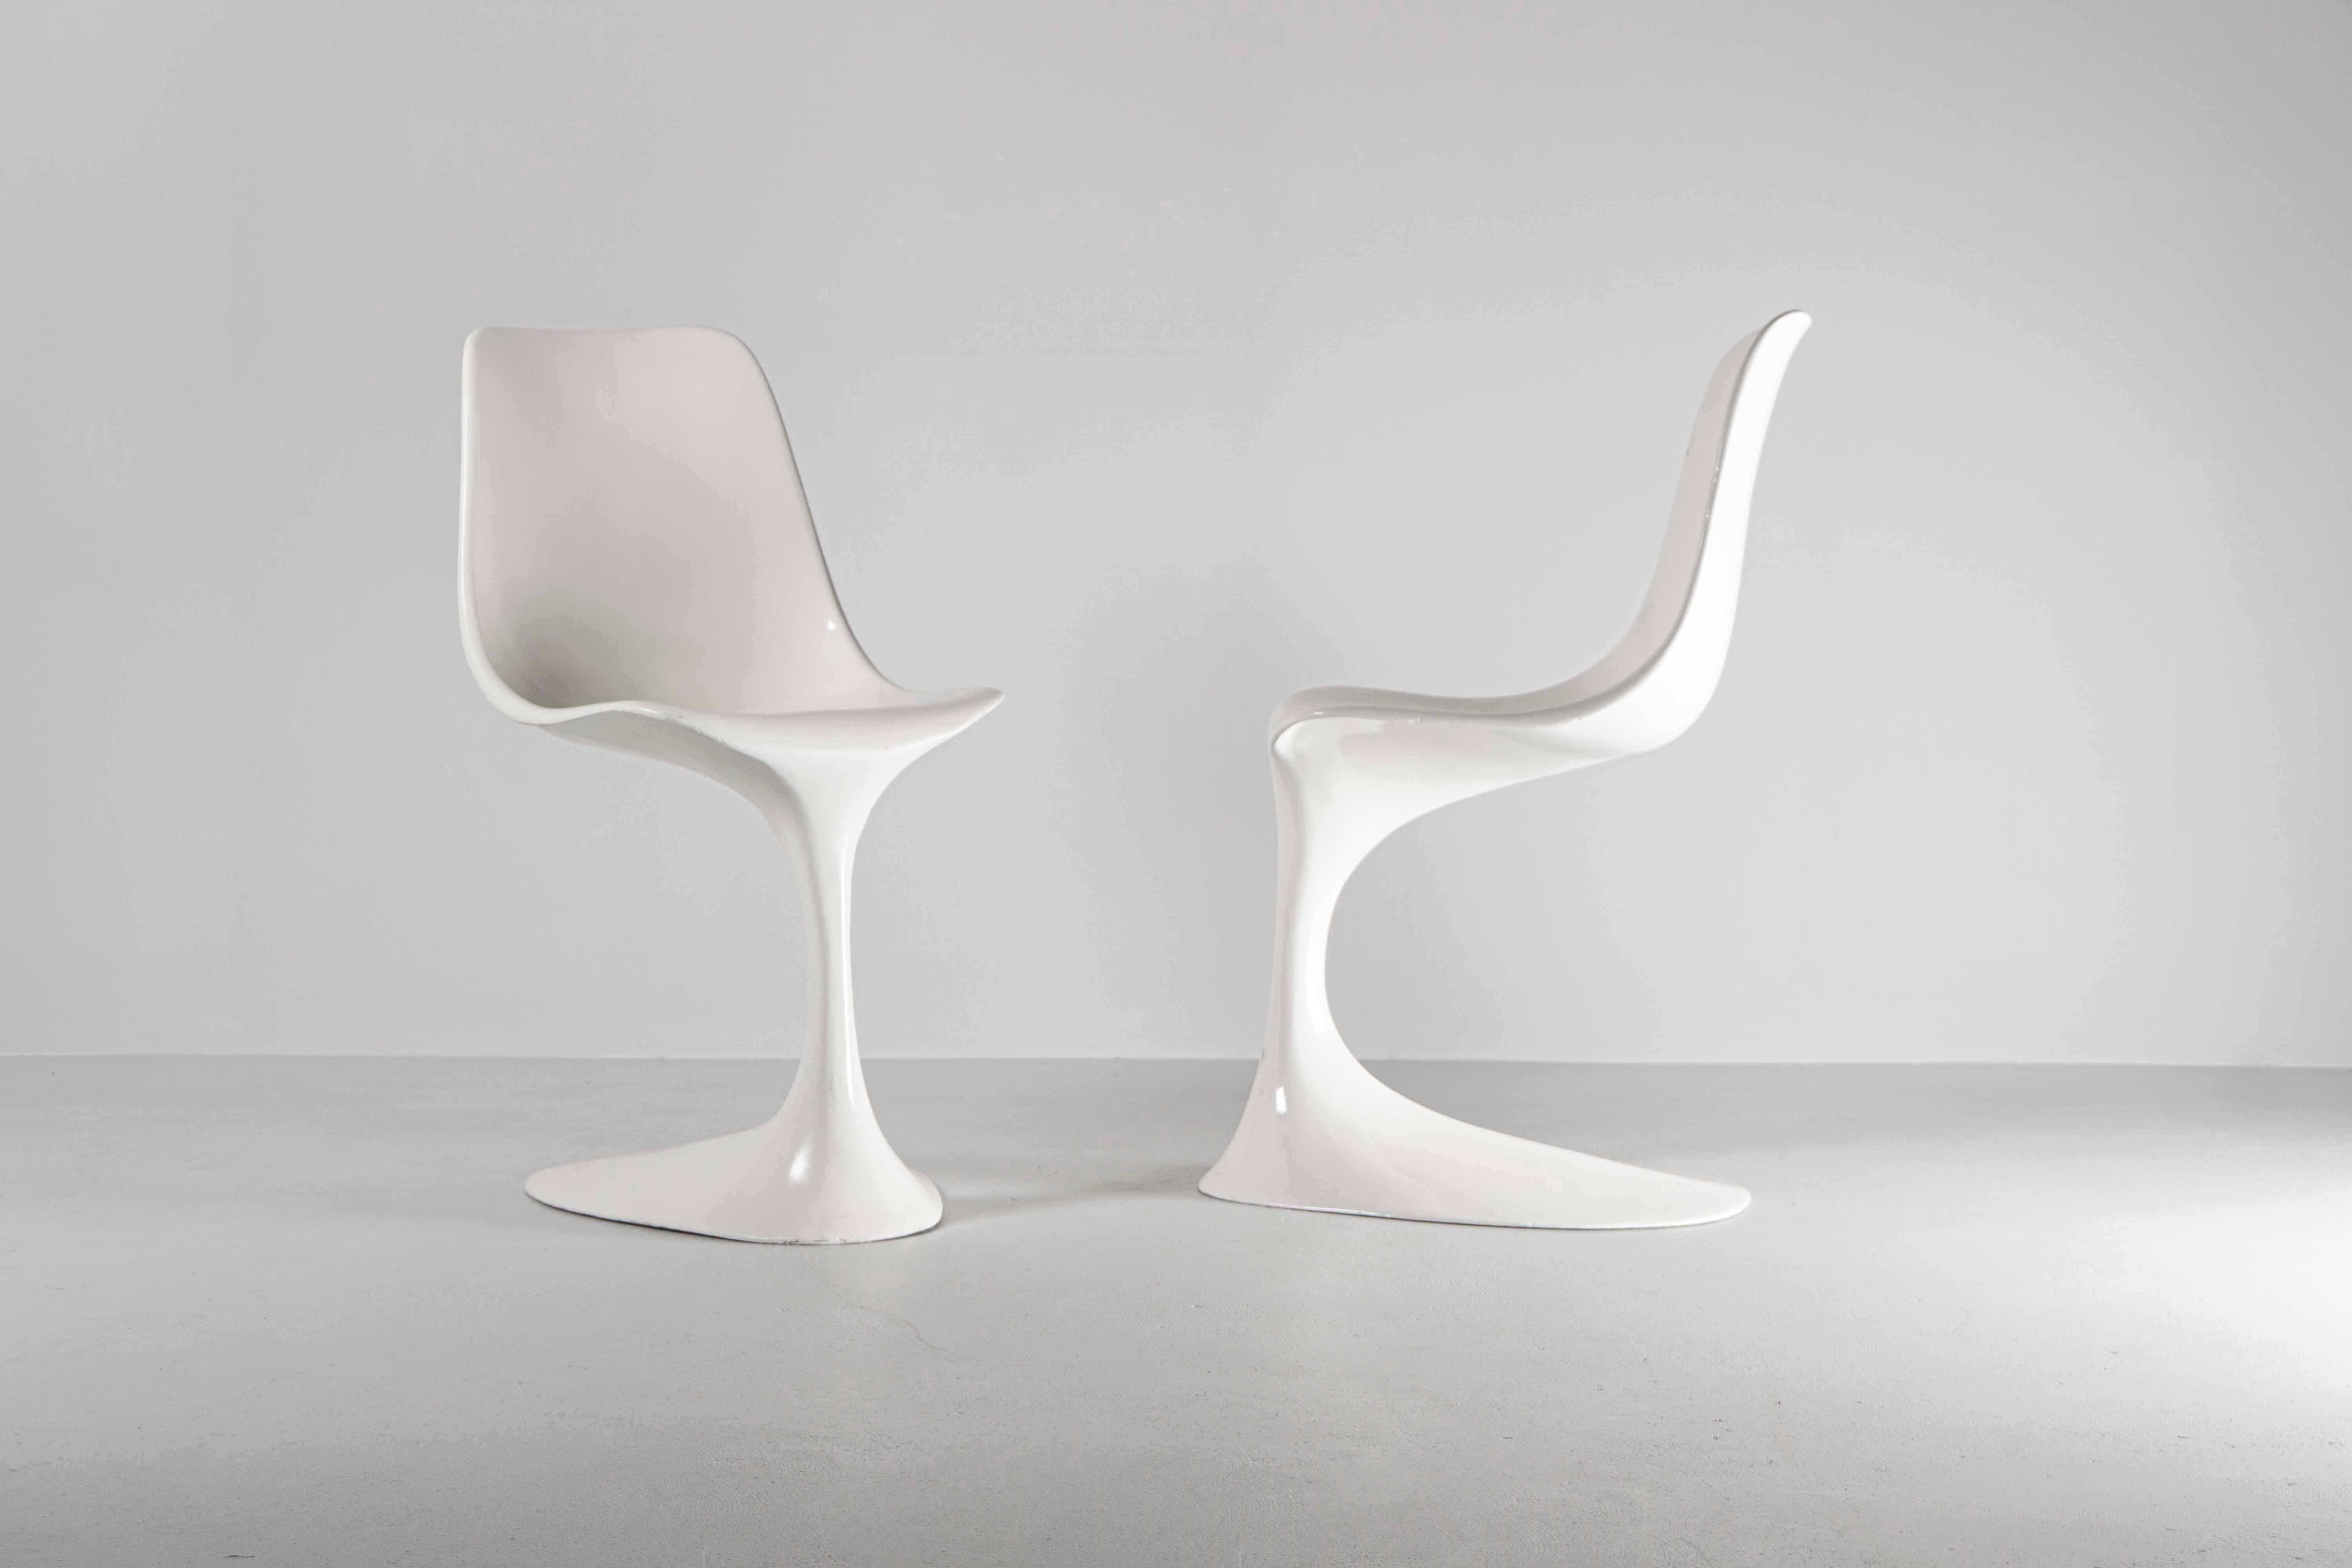 Un ensemble de rares chaises de salle à manger Guido Bonzanini faites à la main, fabriquées par Tecnosalotto Mantova Italie.

Les chaises sont également disponibles séparément (sur demande).